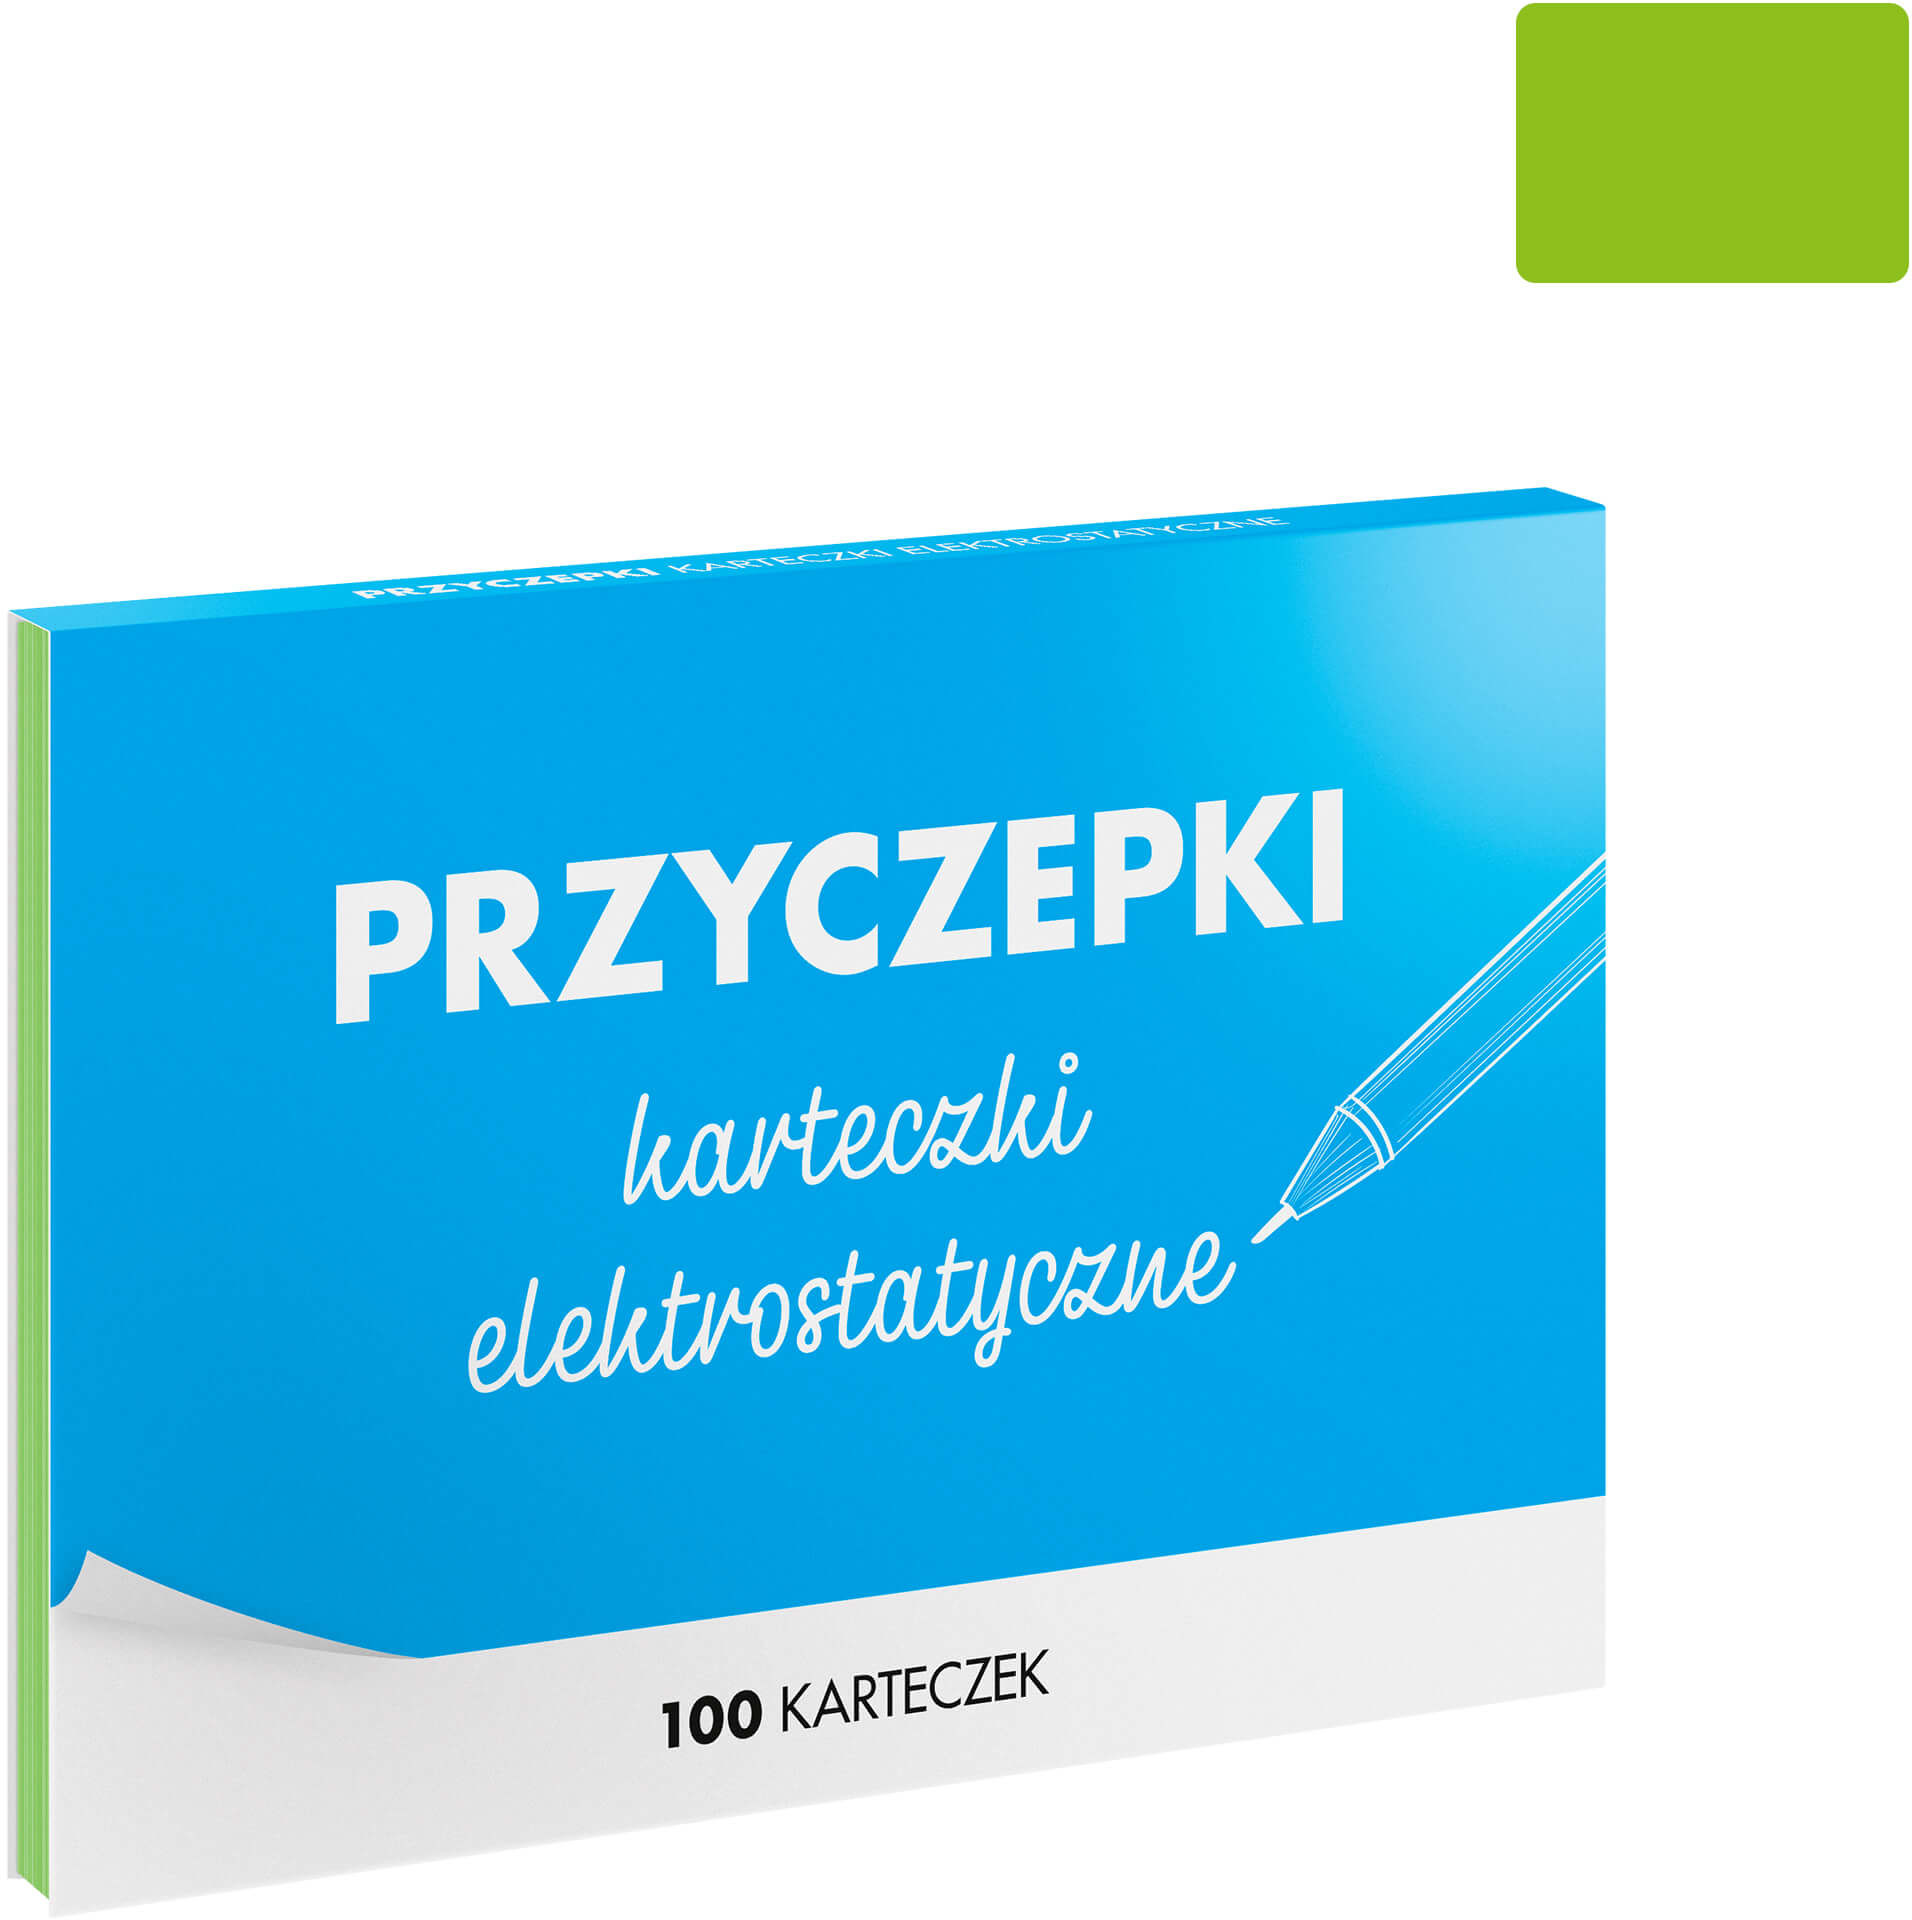 PRZYCZEPKI - zielone karteczki elektrostatyczne - 100 szt. PRZ100-G